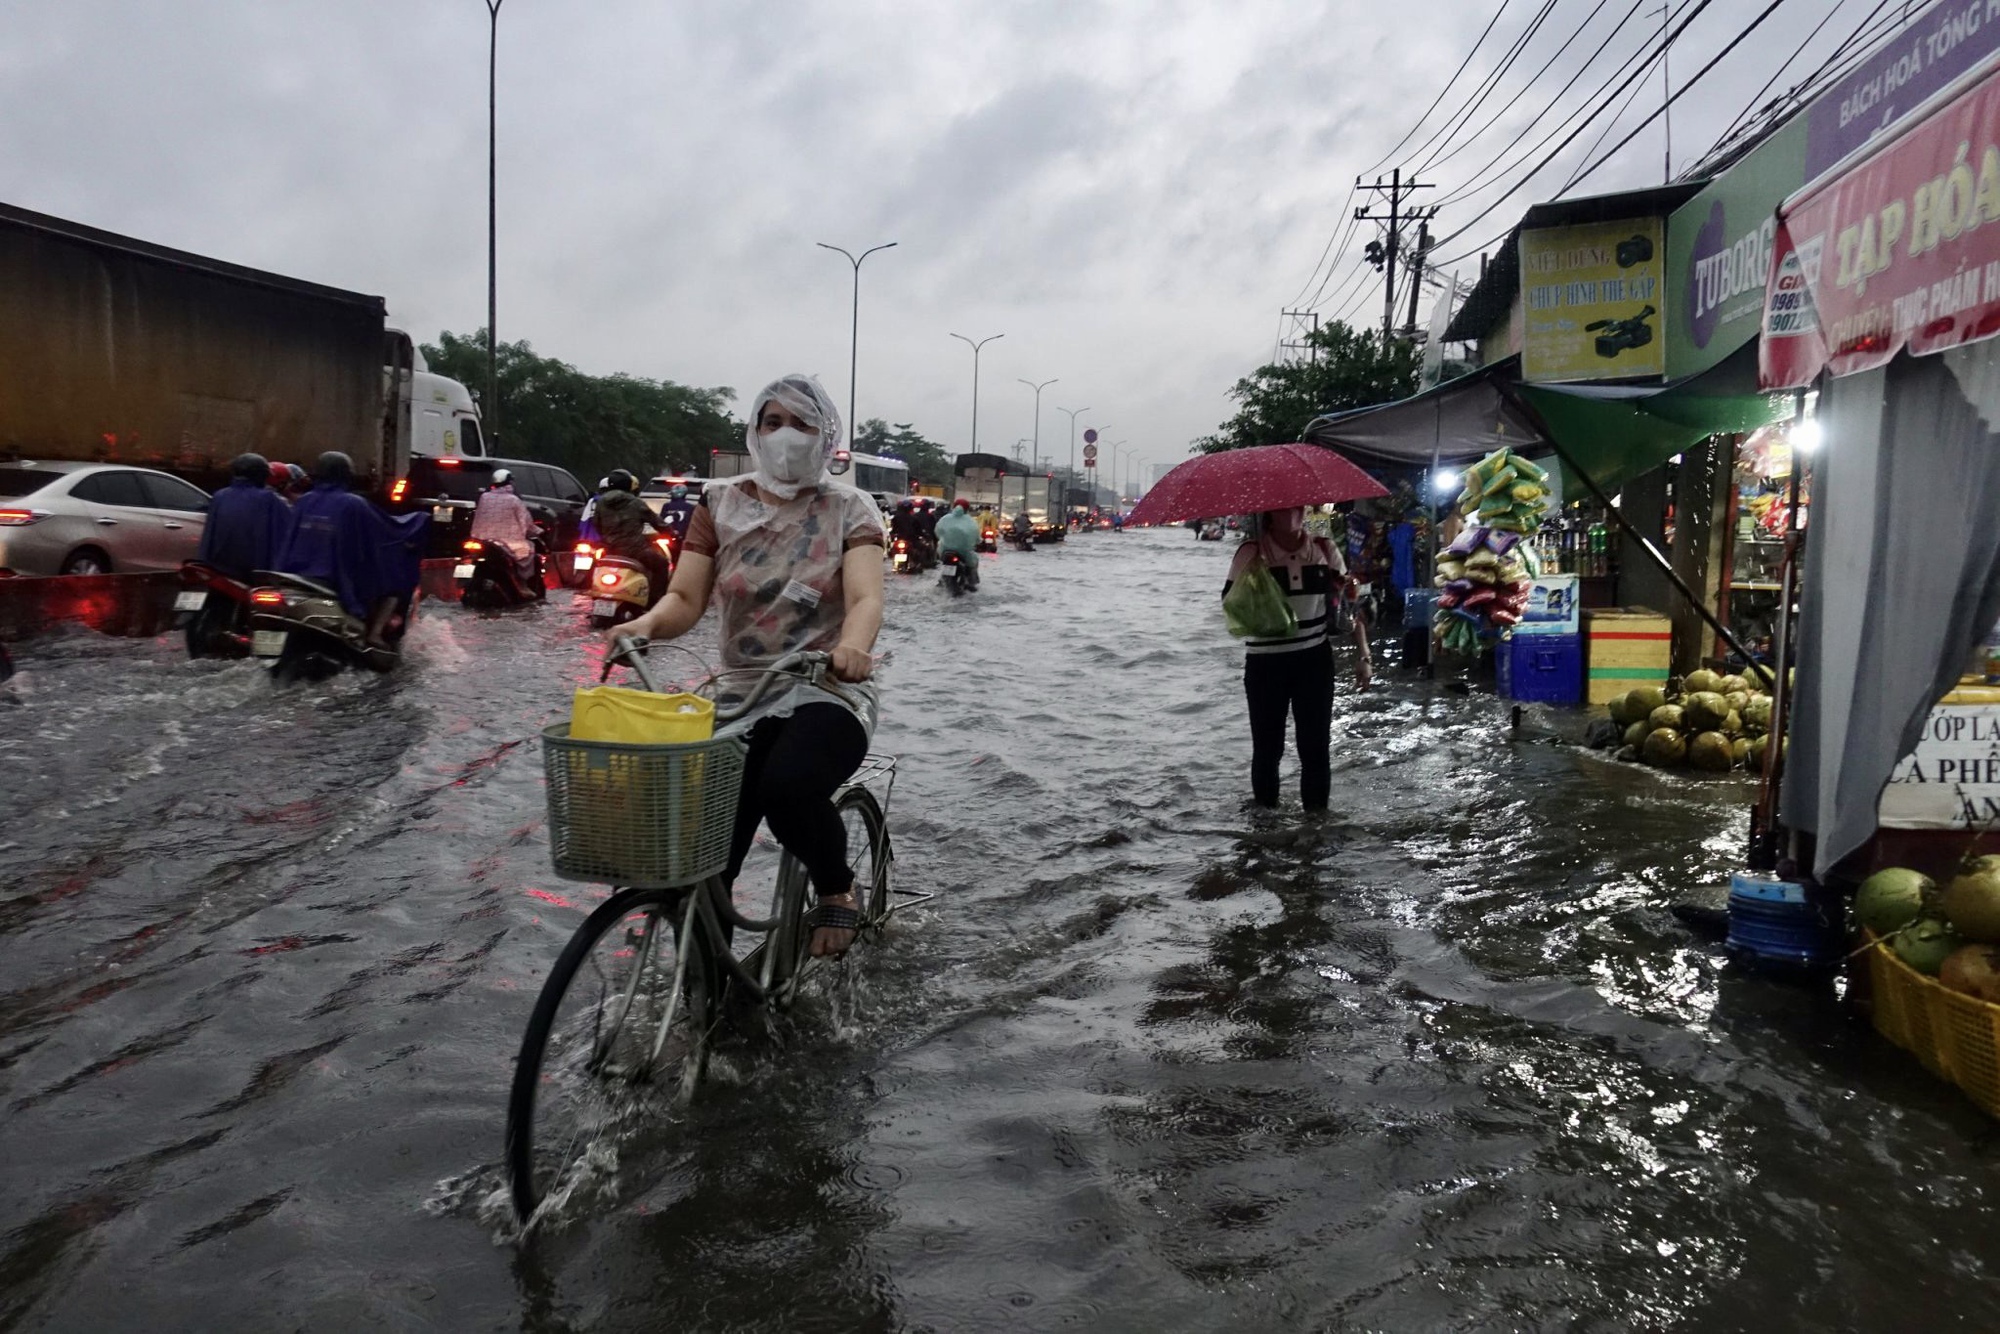 Quốc lộ 1 qua TP.HCM ngập sâu sau mưa lớn - Ảnh 3.